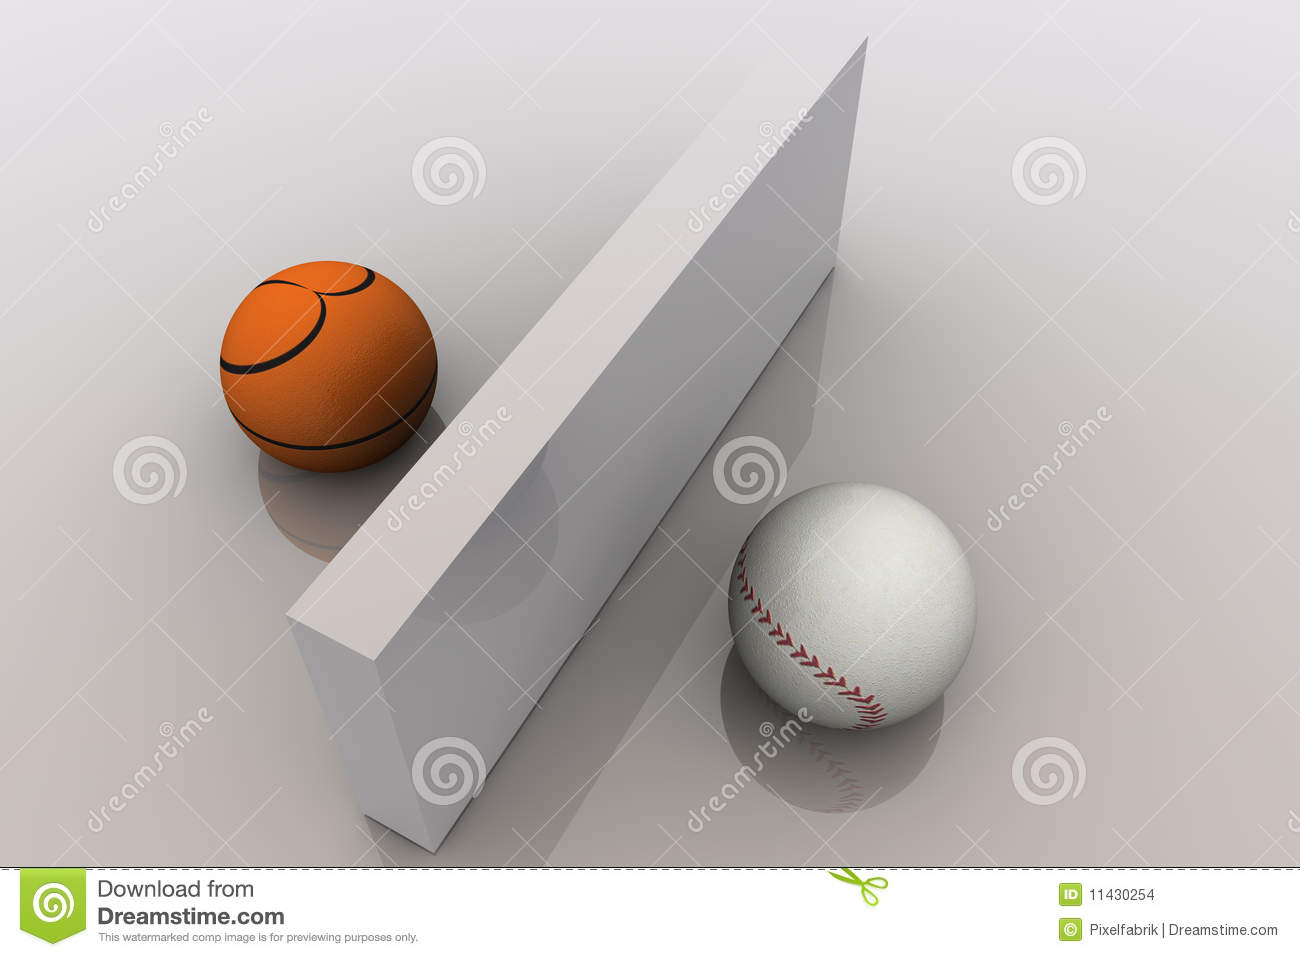 basketball-baseball-11430254.jpg